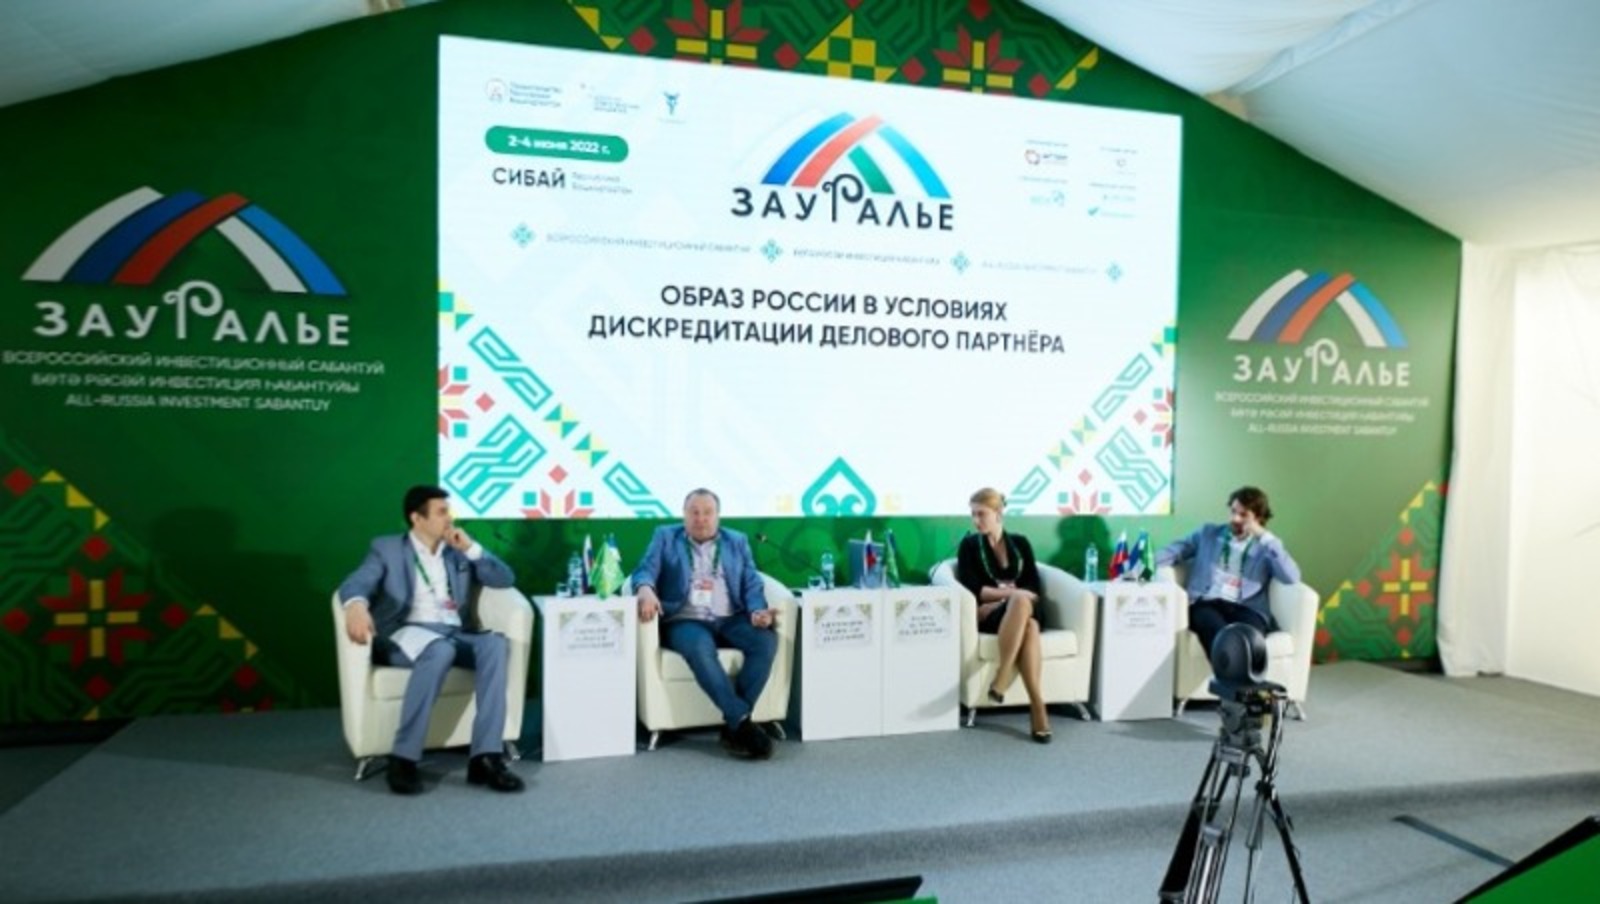 Участники инвестсабантуя «Зауралье-2022» обсудили развитие бизнеса в меняющихся условиях